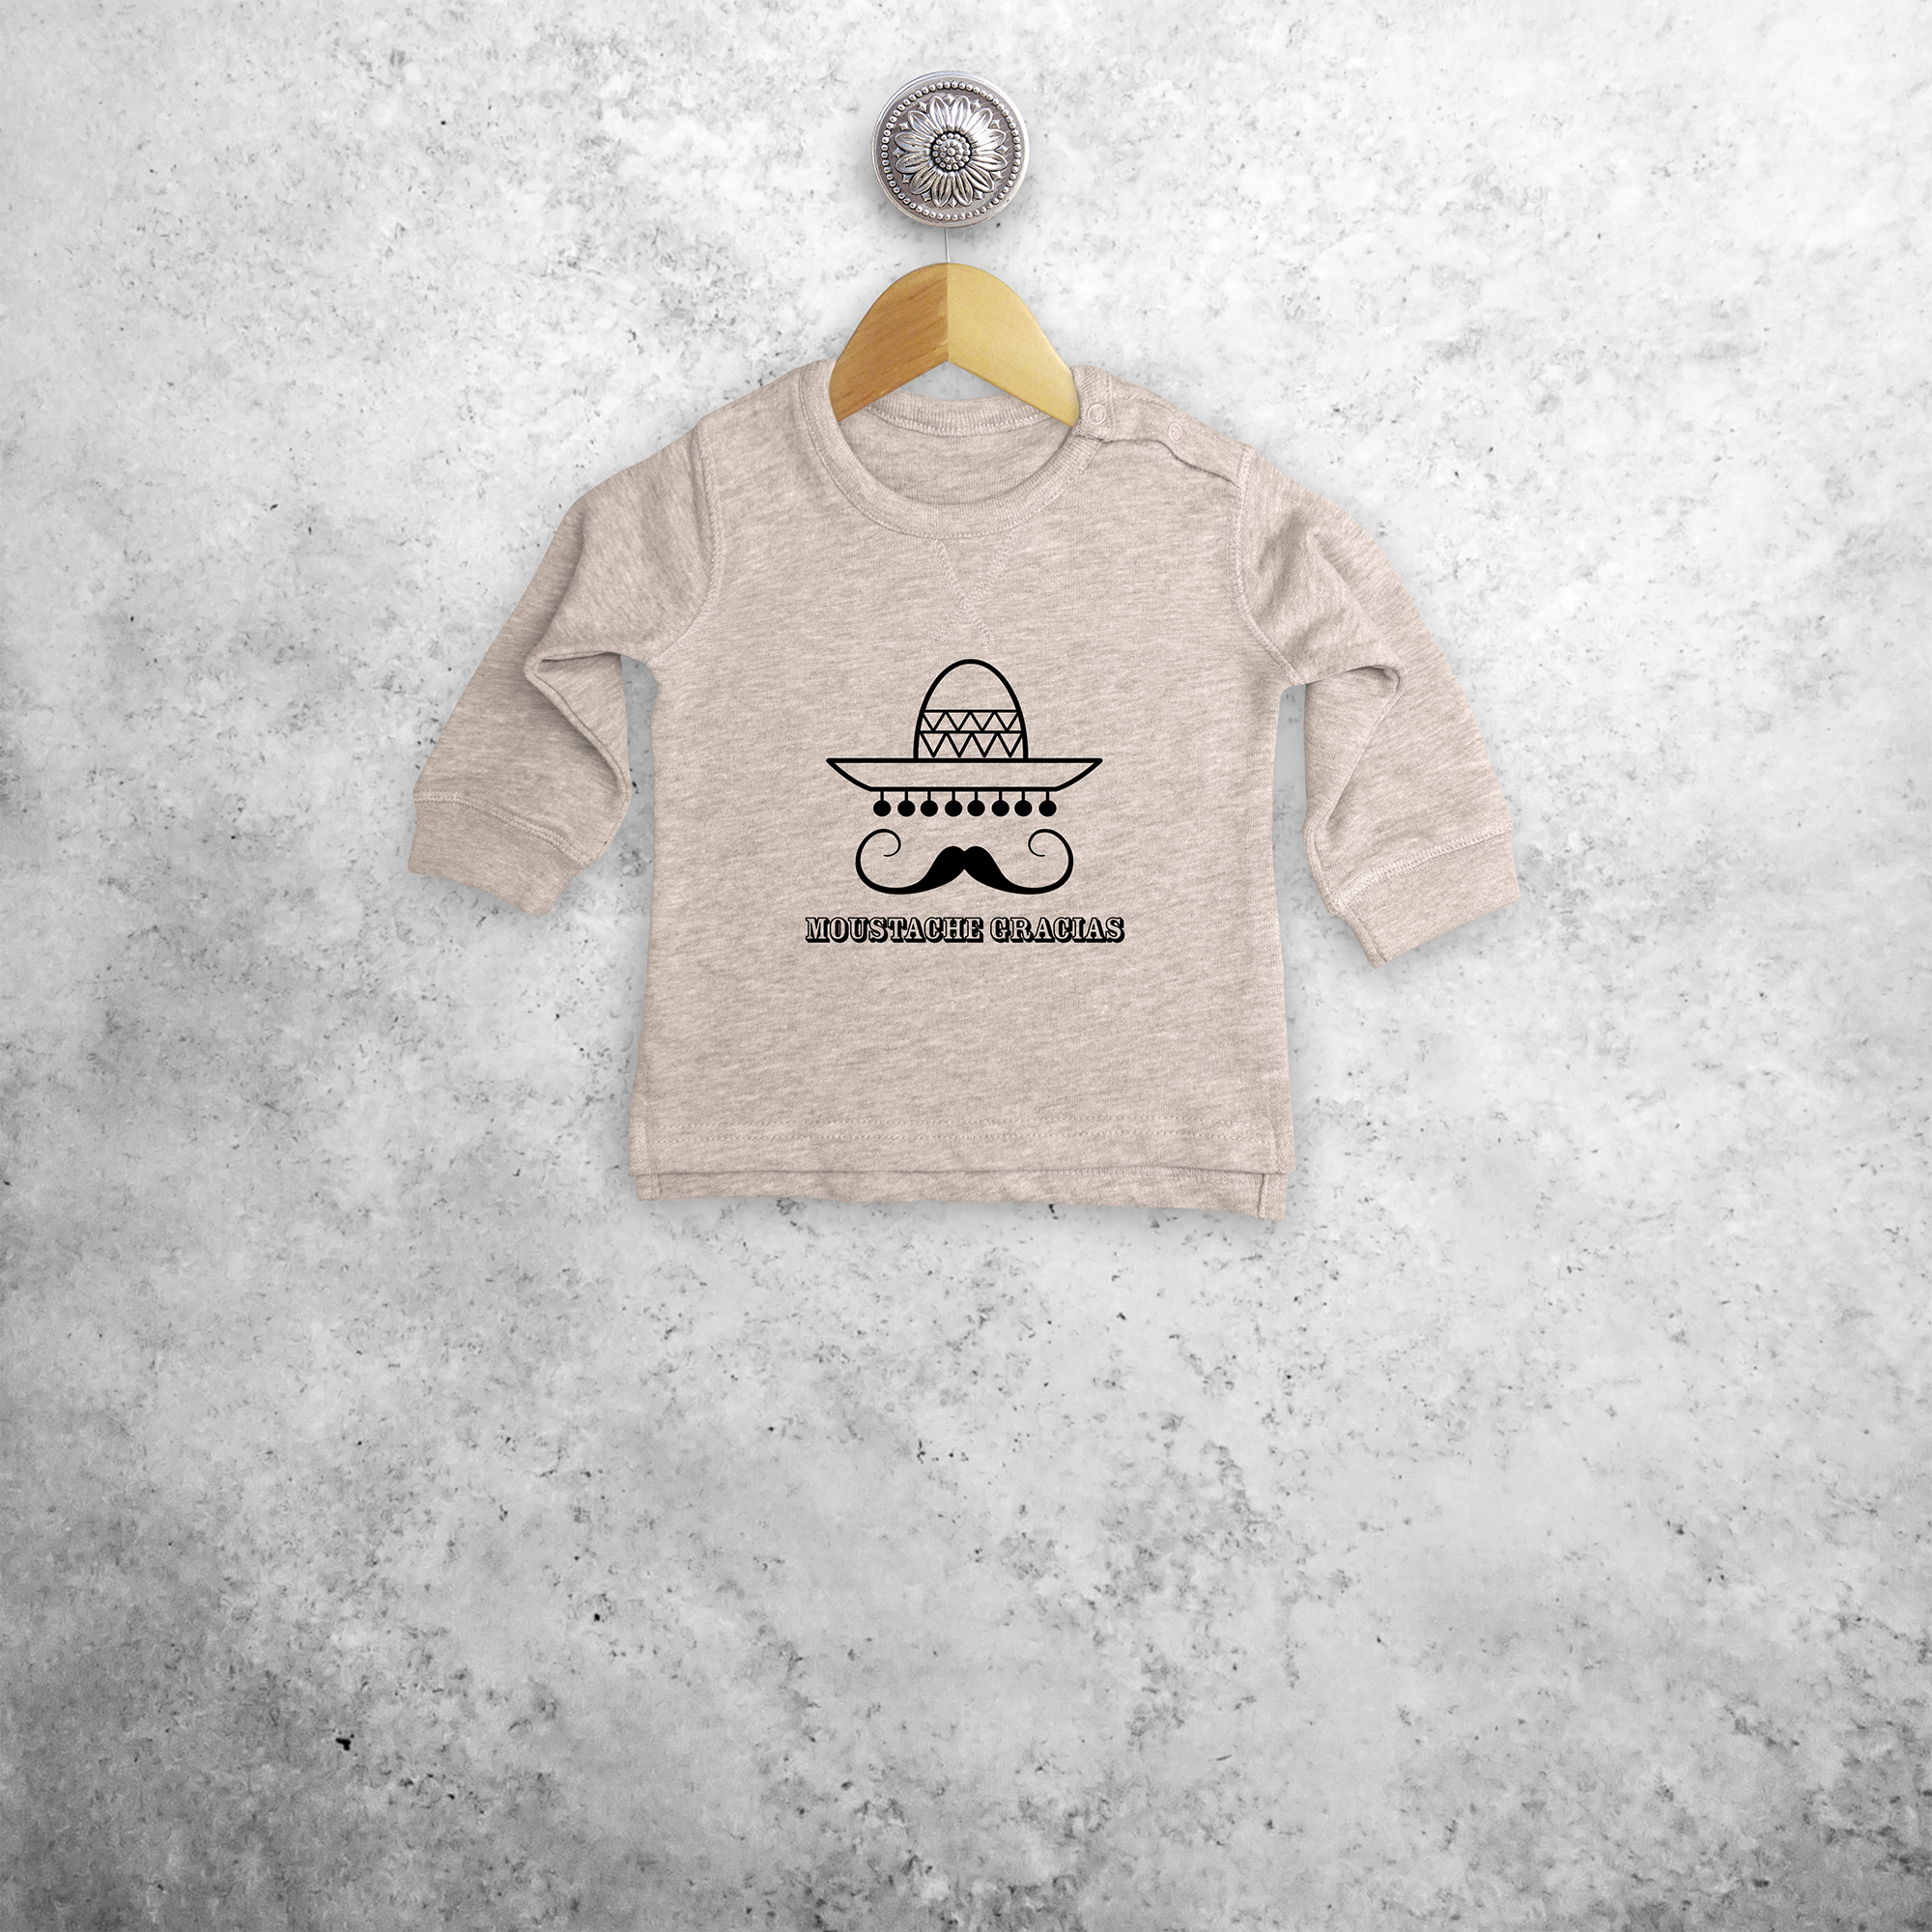 'Moustache gracias' baby sweater